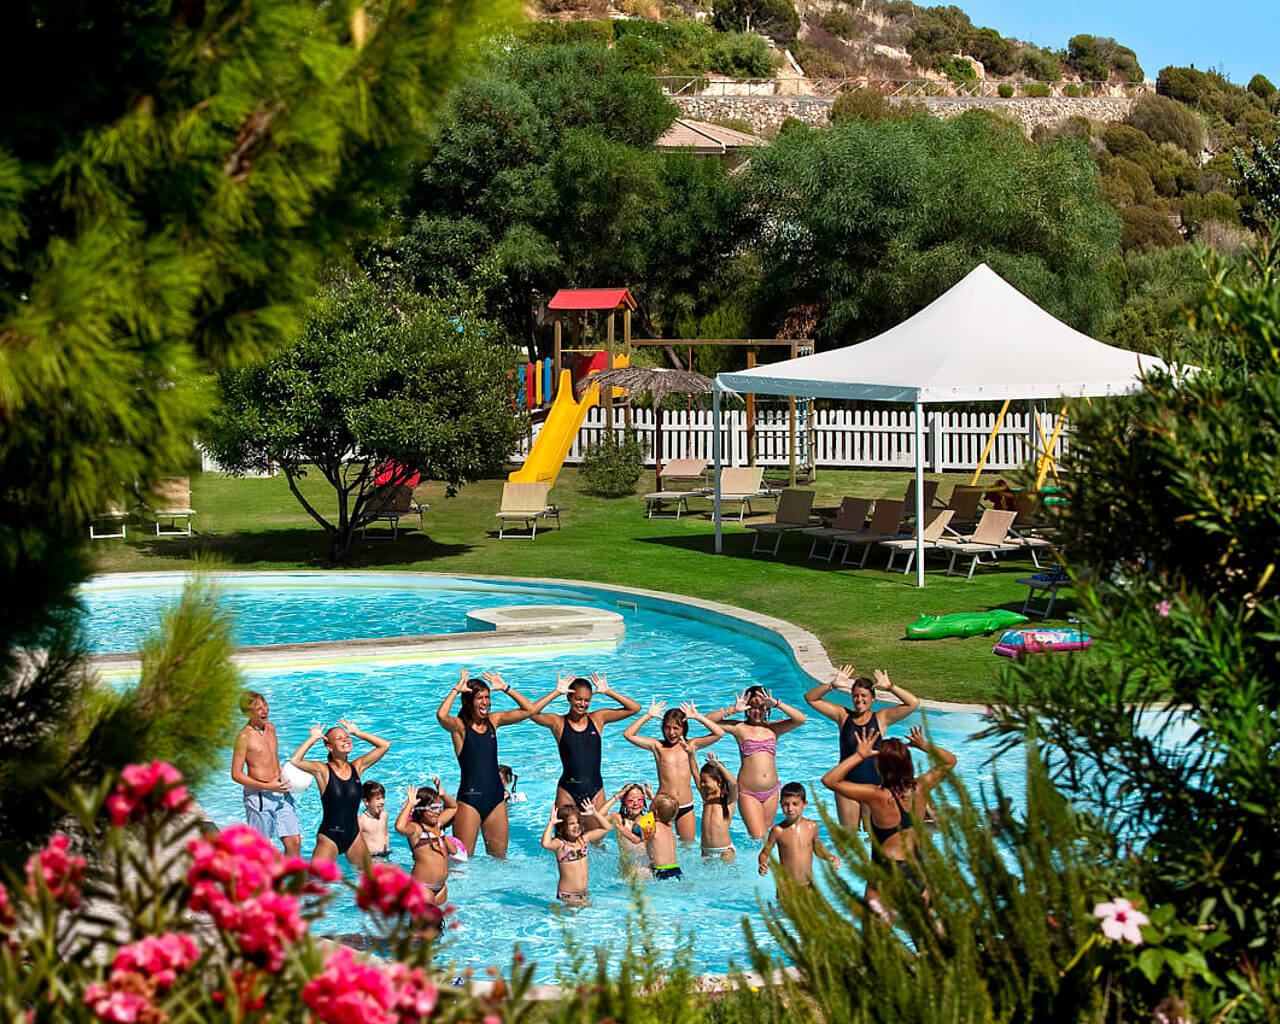 Chia Laguna Resort, club de vacances, Sardaigne